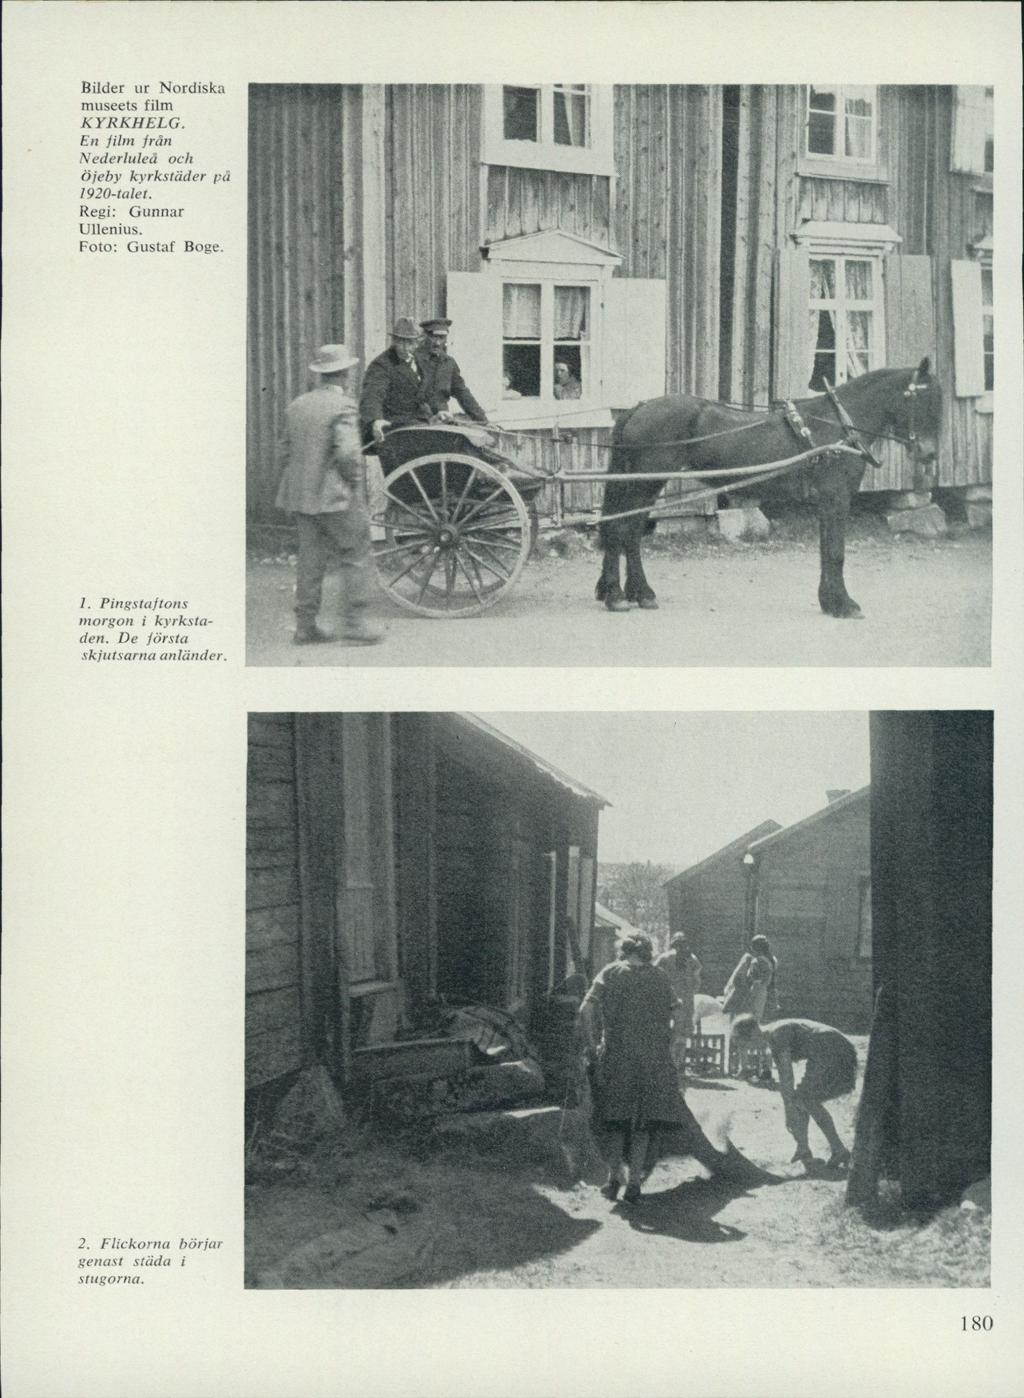 Bilder ur Nordiska museets film KYRKHELG. En film från Nederluleå och öjeby kyrkstäder på 1920-talet. Regi: Gunnar Ullenius.